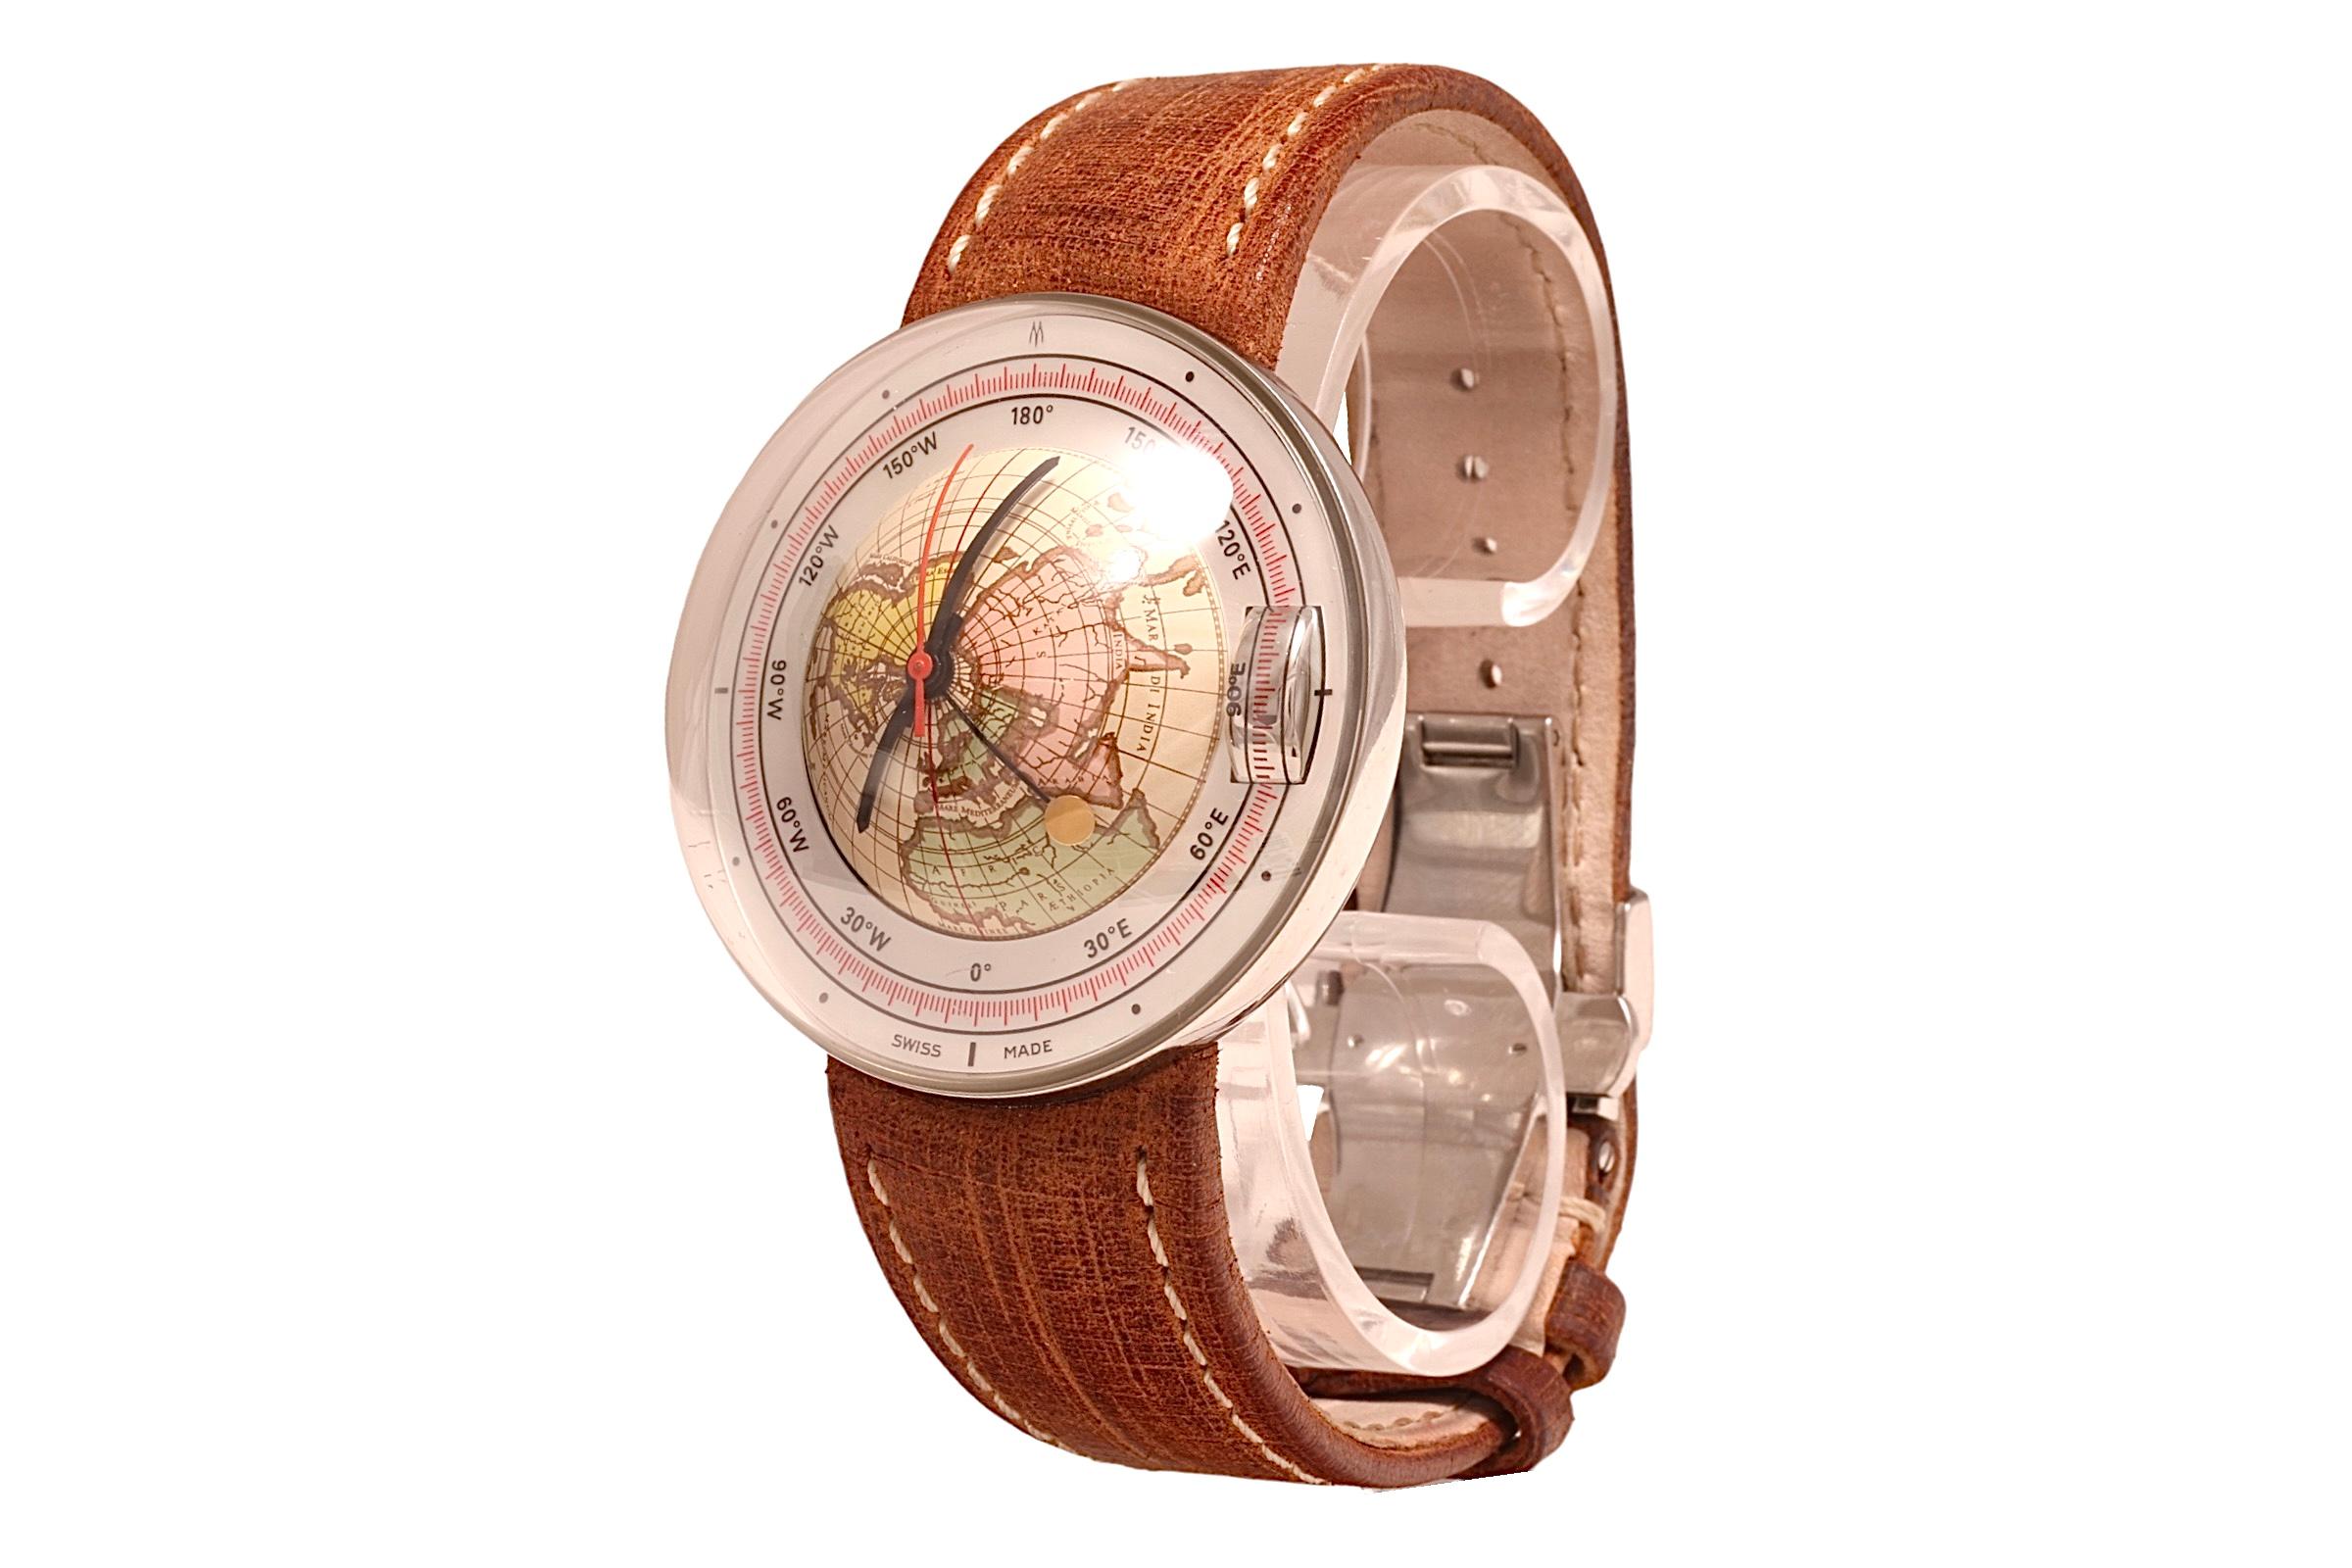 magellan 1521 watch price